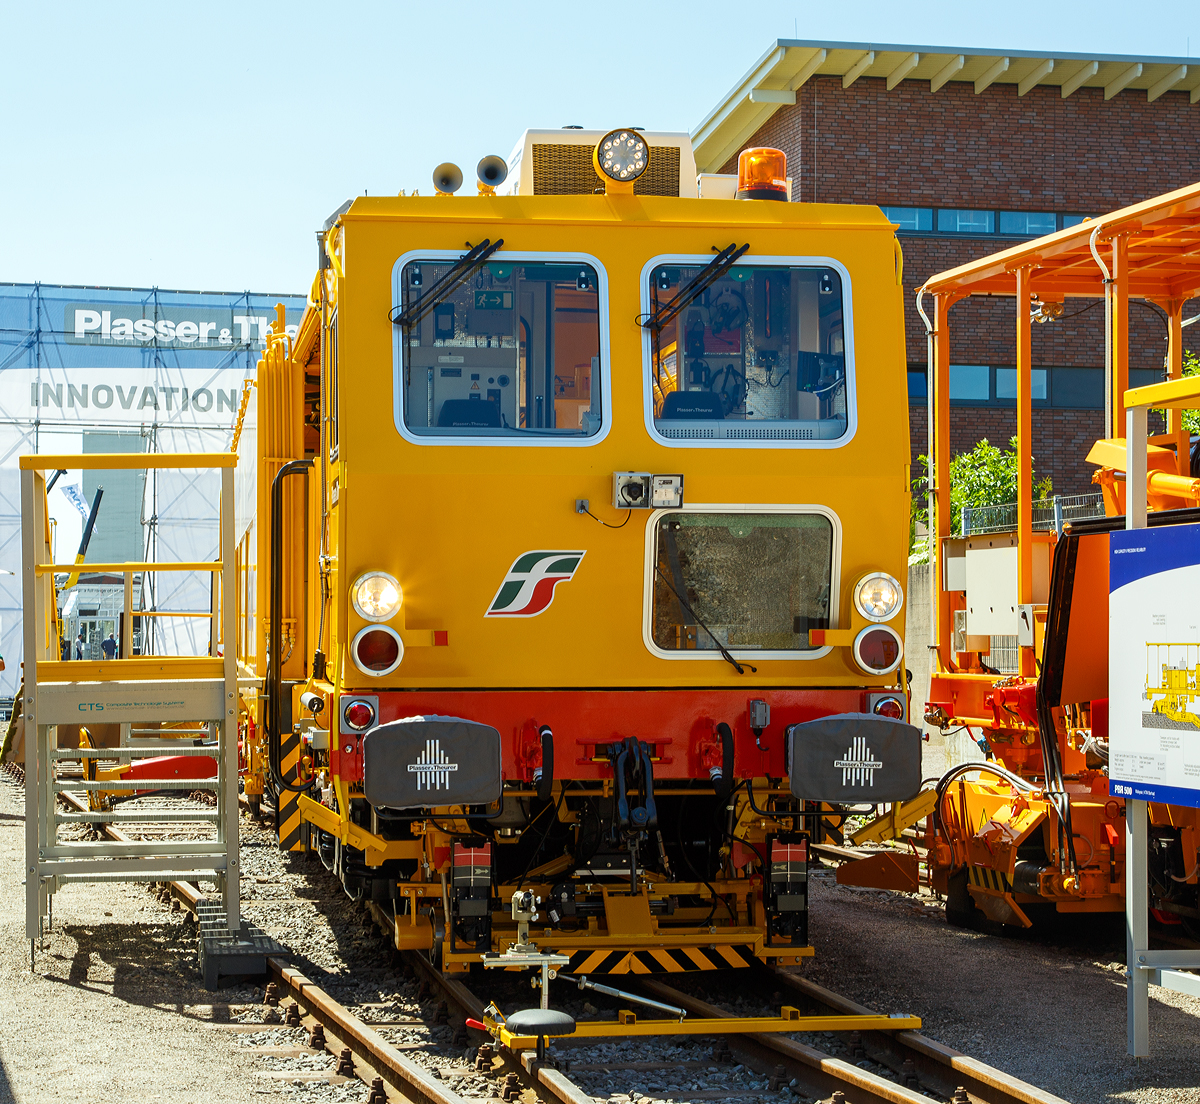 Mit dieser UNIMAT COMBI 08–275 hat Plasser & Theurer (Linz) nun 16.000 Gleisbaumaschinen ausgeliefert, sie wurde auf der iaf in Mnster prsentiert (am 01.06.2017) und an die Rete Ferroviaria Italiana (RFI), Gruppo Ferrovie dello Stato Italiane (zur Gruppe der Italienische Staatsbahnen) bergeben. Dieser UNIMAT COMBI 08–275 hat die UIC-Nummer IT-RFI 99 83 9422 046-6 und wurde 2017 von Plasser & Theurer  in Linz gebaut.

Der Unimat Combi 08-275 wurde zur Sofortbehebung von Gleislagefehlern entwickelt. Neben dem Universalstopfaggregat verfgt die Maschine ber Einrichtungen zum Pflgen, Kehren und Aufzeichnen der Gleisgeometrie. Sie ist uerst universell einsetzbar auf Gleisen und Weichen.

Die italienische Bahn wird mit einer ganzen Serie dieser Multifunktionsmaschinen ausgestattet. Der erste Unimat Combi 08-275 ging 2010 an Rete Ferroviaria Italiana (RFI) in Bologna. Bis 2018 sind es insgesamt 13 gelieferte Unimat Combi 08-275. Der Einsatz identer Technologie untersttzt mageblich die Einhaltung von Standards hinsichtlich der Bearbeitungsqualitt. Wie bei vielen Bahnverwaltungen setzt auch Italien in den lokalen Verantwortungsbereichen gleiche Instandhaltungsmaschinen ein.

Das gesamte Hochgeschwindigkeits-Streckennetz der italienischen Bahnverwaltung RFI umfasst bereits rund 1.000 km. Bei der Wahl der passenden Serienmaschine wurde darauf Wert gelegt, dass sie universell einsetzbar ist fr kurzfristige Arbeiten auf Gleisen und Weichen. Das „Universalwerkzeug“ Unimat Combi 08-275 vereint folgende Technologien: Stopfmaschine fr Gleise und Weichen, integrierter Schotterpflug und Kehrbrste, vollwertiges inertiales Gleisgeometrie-Messsystem.

Die Maschinen werden auf alle Bauhfe der RFI verteilt und zur Einzelfehlerbehebung sowohl auf Hochgeschwindigkeitsstrecken als auch auf normalen Strecken eingesetzt. Mit einem Messfahrzeug werden im Vorfeld Einzelfehler detektiert. Das GPS-untersttzte inertiale Gleisgeometrie-Messsystem am Unimat Combi 08-275 findet die Gleisfehler schnell und punktgenau. Nach der Fehlerbehebung – dem Stopfen, Pflgen und Kehren – wird nachgemessen. Damit erreicht man eine verbesserte Auslastung der Universalstopfmaschine. Der Unimat Combi 08-275 kann auch als Messwagen eingesetzt werden. Die mitgelieferte Software analysiert die Messdaten gem den aktuellen Richtlinien von RFI.

Dreimal wchentlich werden in vier- bis fnfstndigen Nachteinstzen jeweils etwa 1.000 m Gleis und ein bis zwei Weichen gestopft, gepflgt und gekehrt.

Die Entscheidung fr einen Serienmaschinentyp bringt eine Reihe von Vorteilen. Die Zulassungskonformitt beschleunigt den Prozess. Ist eine Maschinentype bereits im Bestimmungsland zugelassen, geht eine neue Maschine derselben Type deutlich schneller in Betrieb. Standards im Maschinenpark vereinfachen auch die Wartung. Der Umfang der Ersatzteilbevorratung kann reduziert werden, wenn mehrere baugleiche Maschinen eingesetzt werden. Auch das Training und die Schulung der Bedienmannschaften wird durch Serienmaschinen erleichtert. 

TECHNISCHE DATEN:
Spurweite: 1.435 mm (Normalspur)
Anzahl der Achsen: 5 
Lnge ber Puffer:  31.140 mm
Eigengewicht: 94.000 kg
Zul. Anhngelast: 60 t
Zur Mitfahrt zugel. Personenzahl: 6
Kleister befahrbarer Gleisbogen: R = 120 m 
Hchstgeschwindigkeit: 100 km/h (Eigen und Geschleppt)

Die Neue Zukunft ist das Hybridantriebskonzept E 
Fr den Unimat Combi 08-275 in Italien steht von Plasser & Theurer auch nun das neue Hybridantriebskonzept E zur Verfgung. Es treibt die Maschine entweder durch einen Dieselmotor oder einen Elektromotor an, und zwar durch Nutzung der elektrischen Energie aus dem Fahrdraht. In Italien werden allerdings zwei unterschiedliche Fahrstromsysteme verwendet: 3 kV Gleichstrom auf konventionellen Strecken, 25 kV Wechselstrom mit 50 Hz im Hochgeschwindigkeits-Streckennetz. Die Combi-Maschine wird fr beide Systeme als 2-Strom-System ausgefhrt.

Neben geringerem Schadstoffaussto und Einsparung von fossilen Treibstoffen reduziert das Hybridantriebskonzept E den Maschinenlrm. Damit erweitert sich der Einsatzbereich der Maschine. Sie kann auch innerstdtisch, bei Nachtarbeiten oder fr Arbeiten im Tunnel herangezogen werden.  